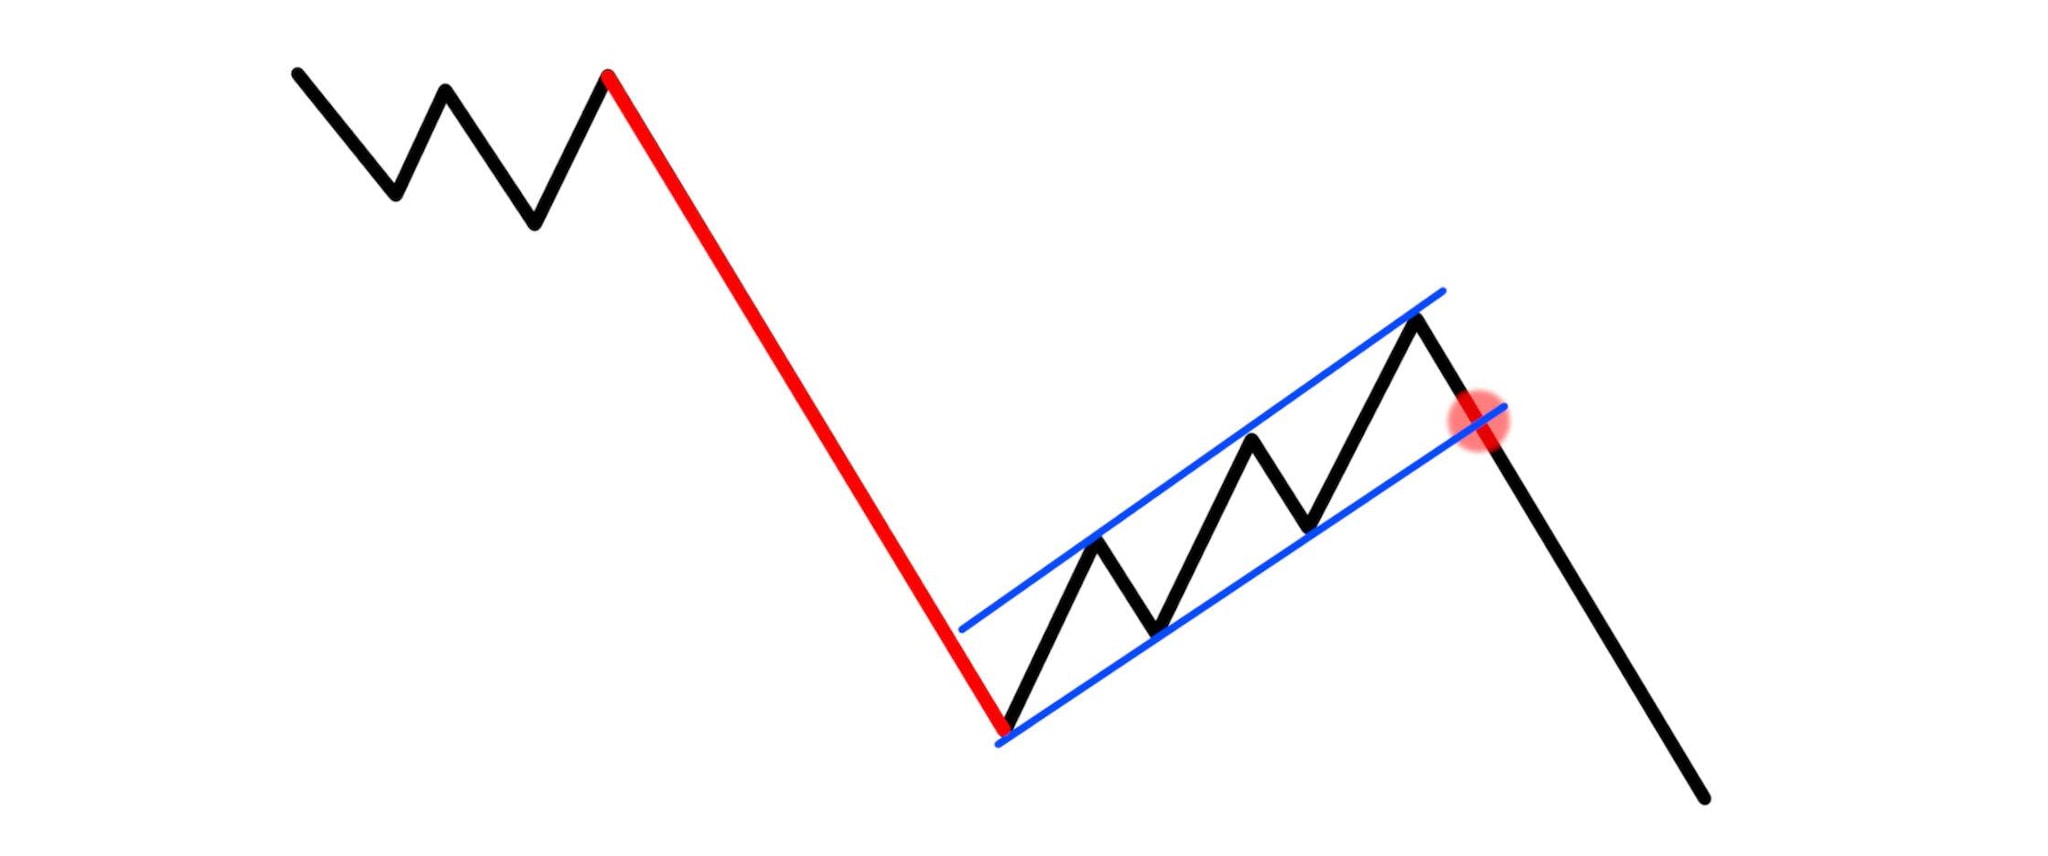 Zwei parallele Linien markieren den Abschnitt eines Kursverlaufs, der nach einem abfallenden Kurs von einem Kursanstieg unterbrochen wird, bevor er weiter sinkt.